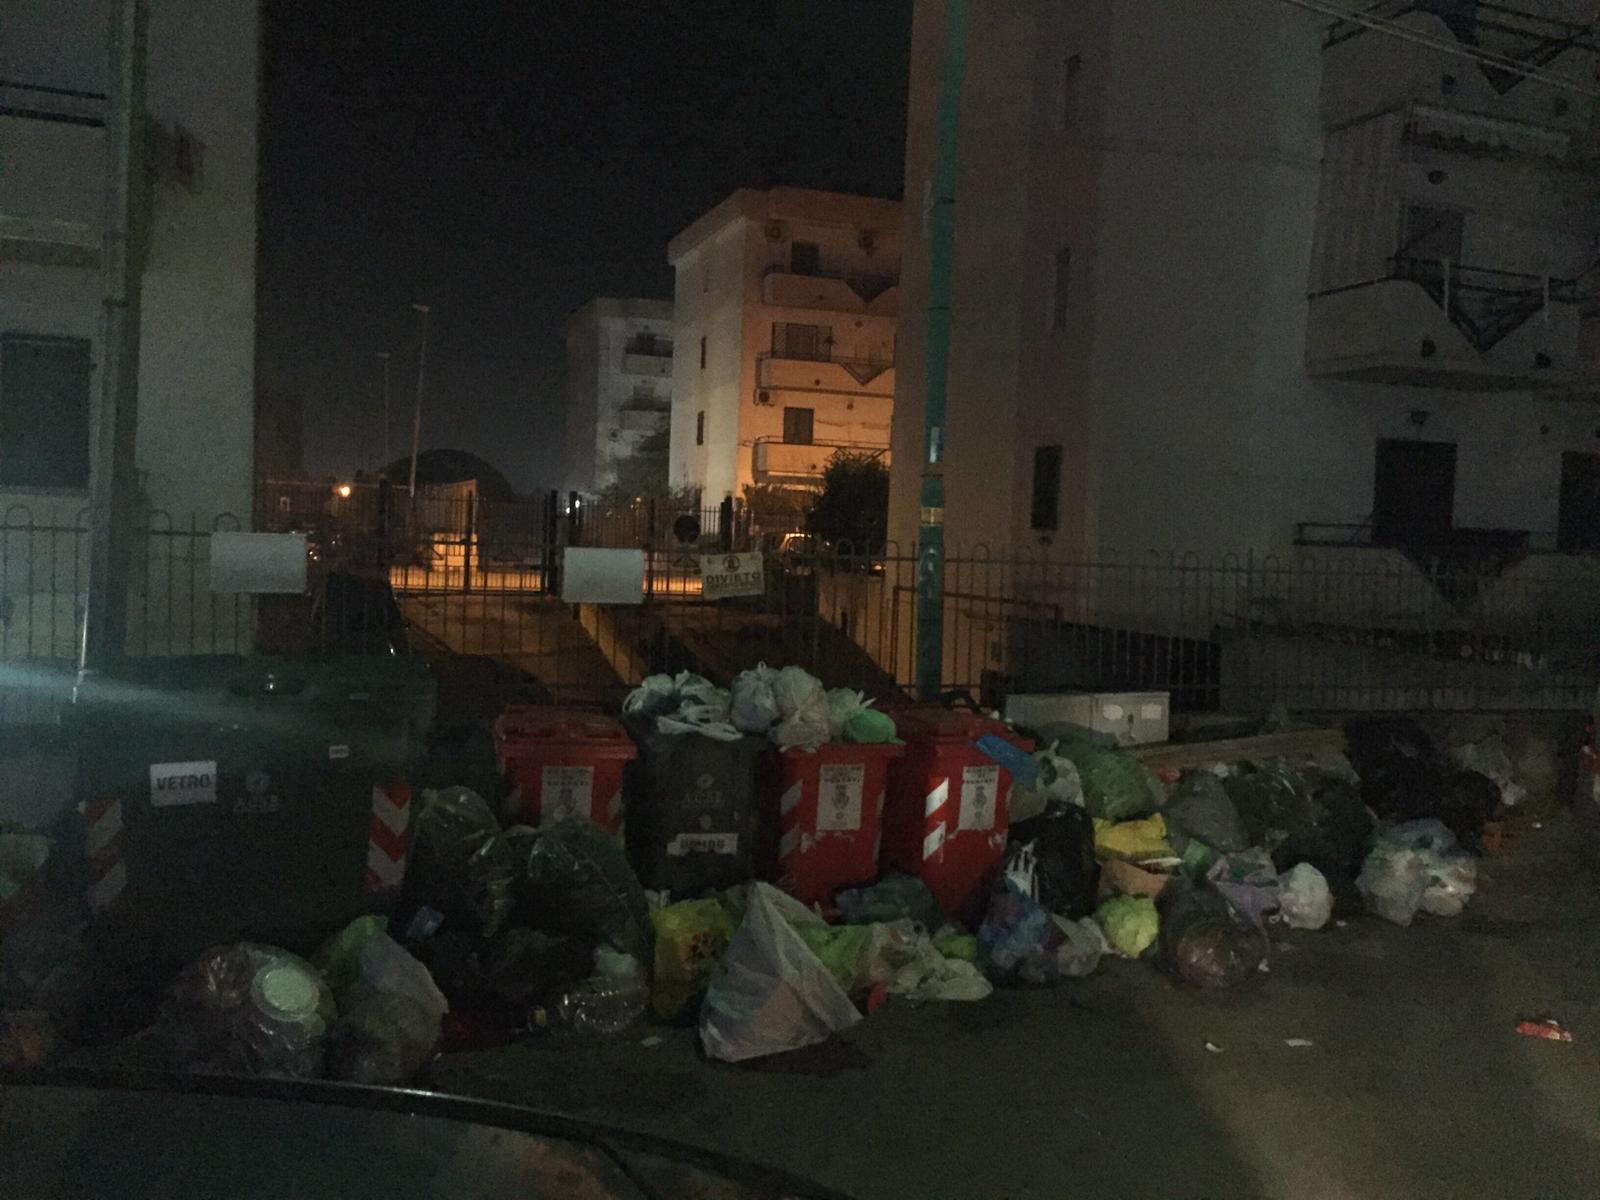 Scafati invasa dai rifiuti: lettera aperta ai cittadini. LE FOTO DELLA VERGOGNA